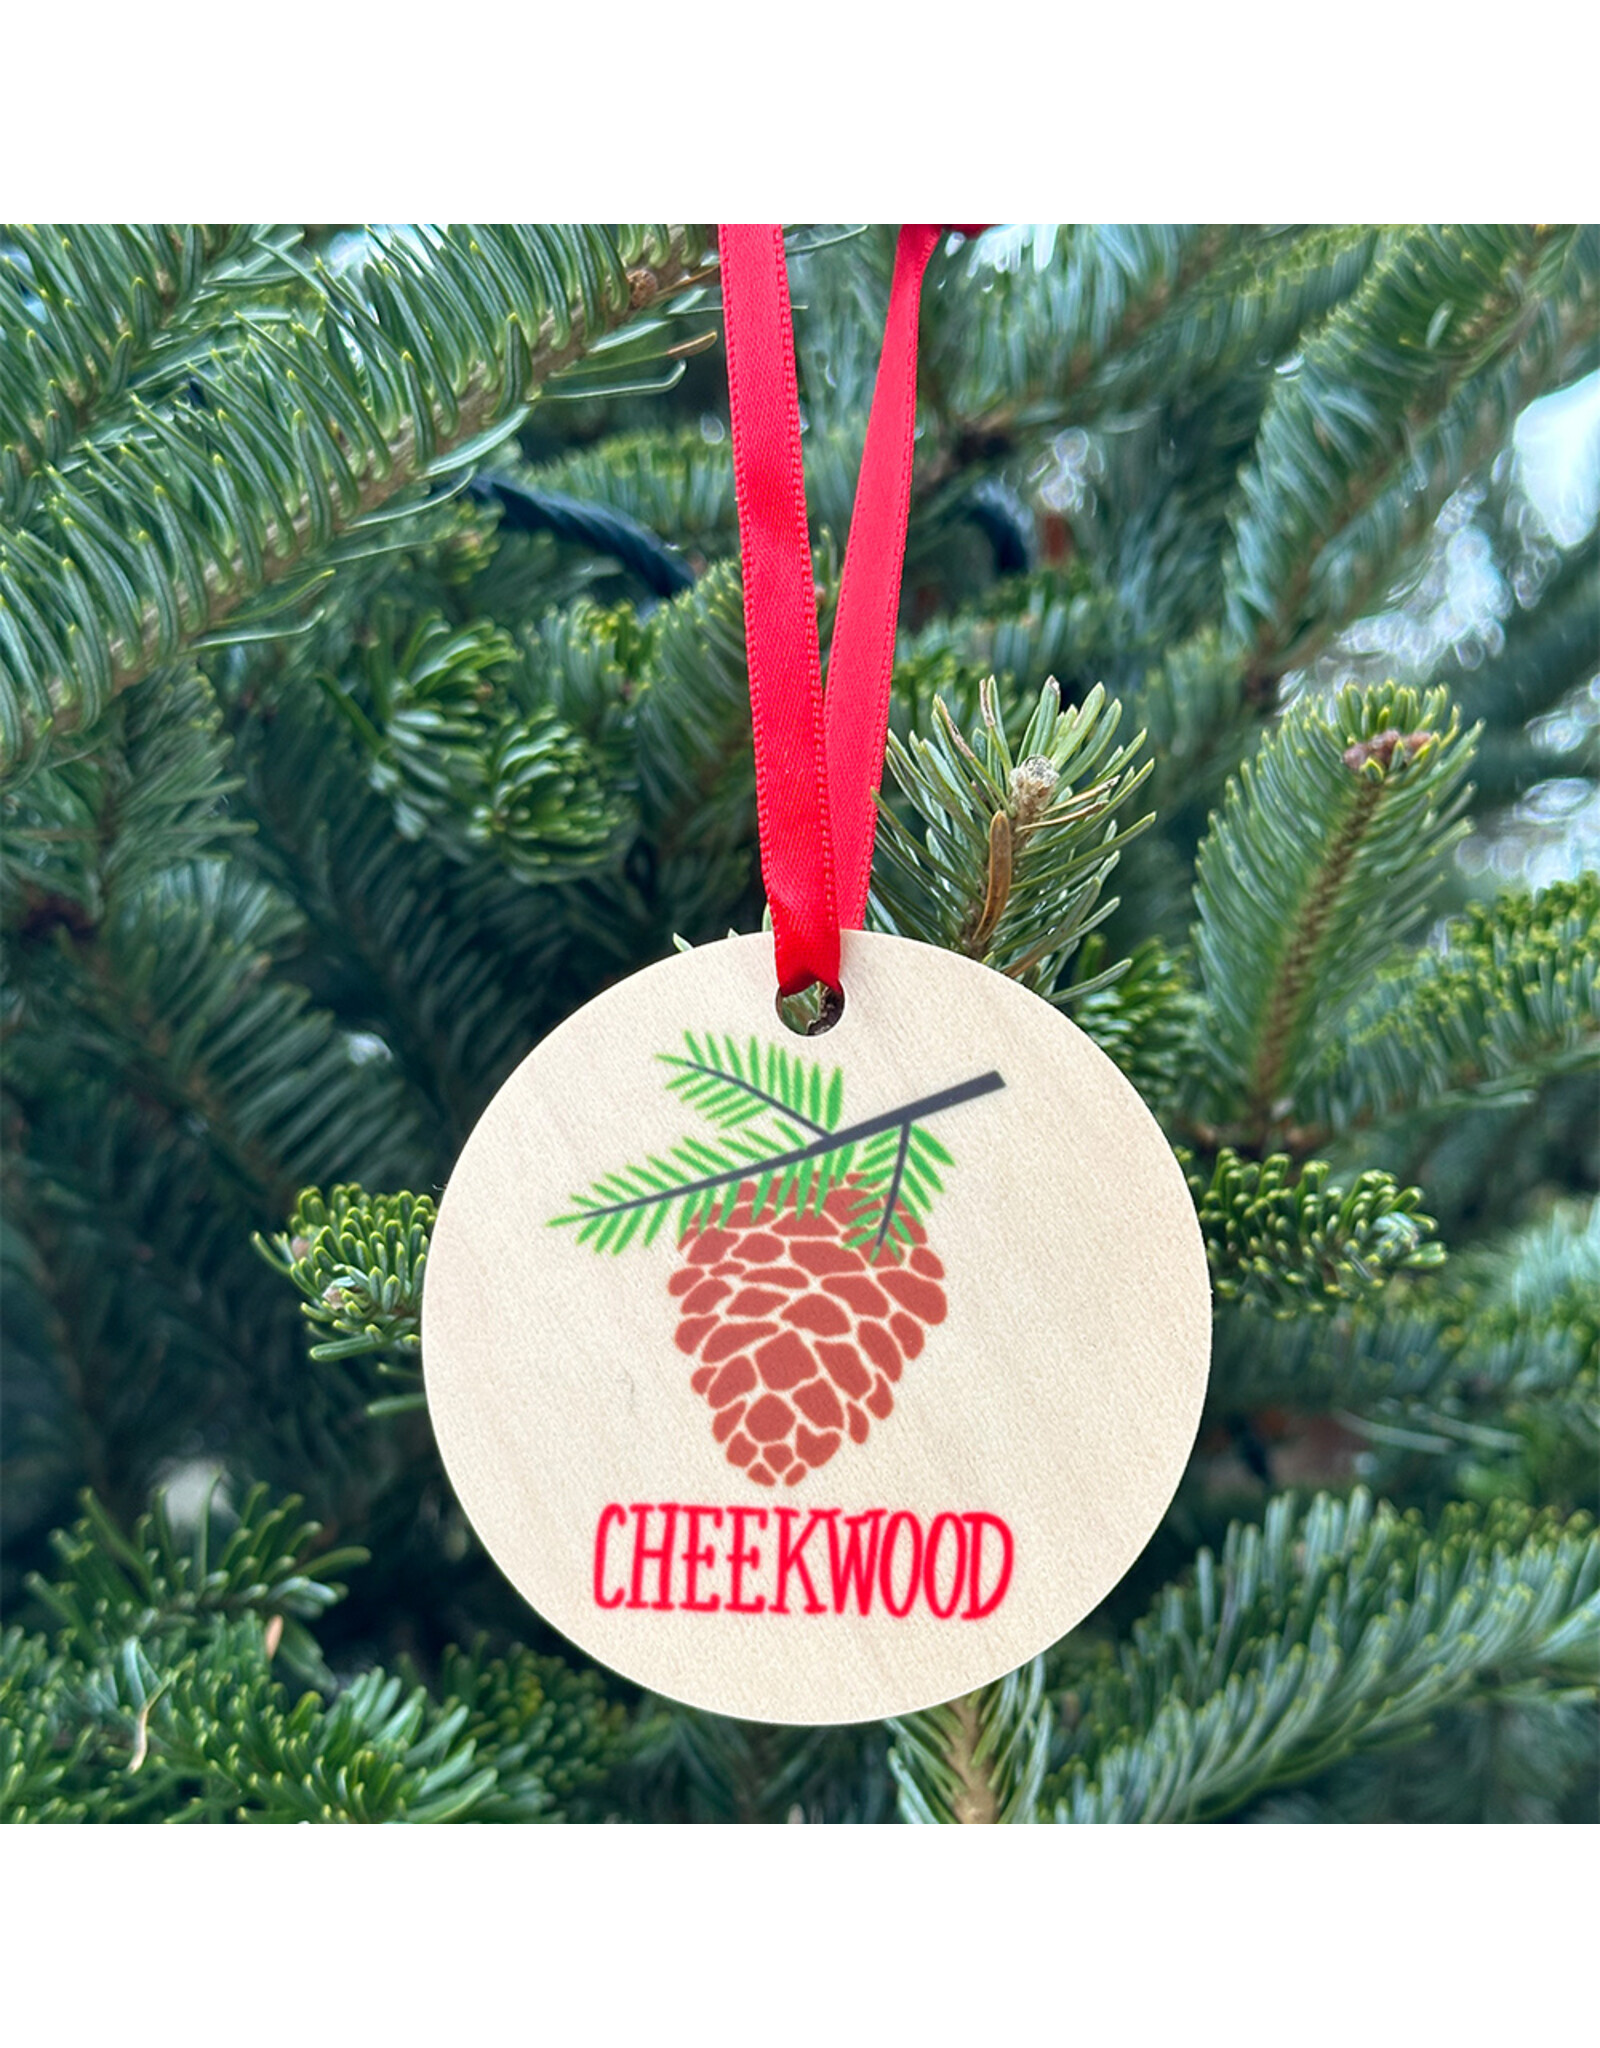 RSP Cheekwood Ornament